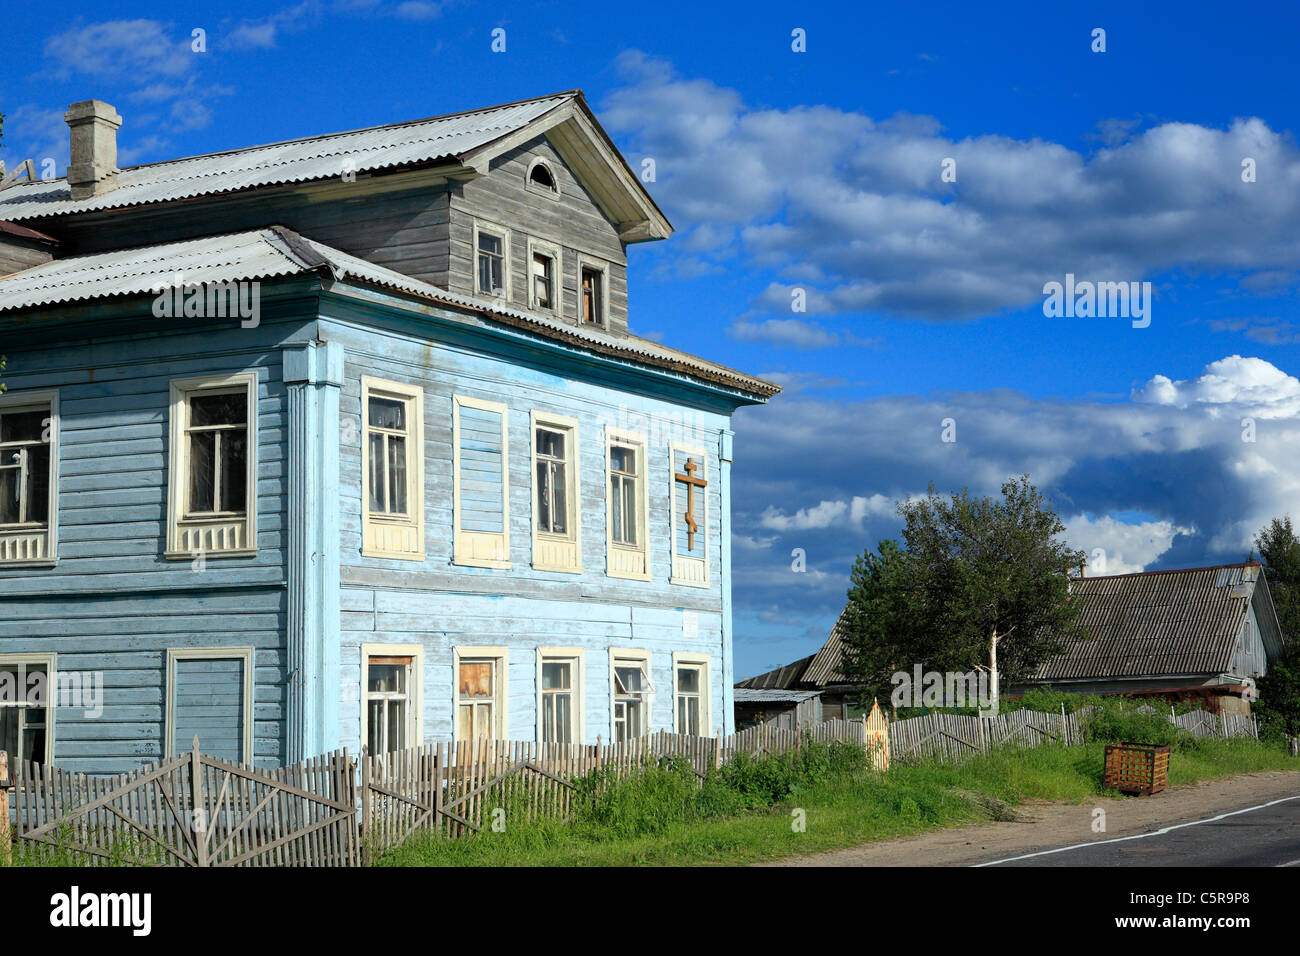 Lavla, Archangelsk (Arkhangelsk) region, Russia Stock Photo - Alamy